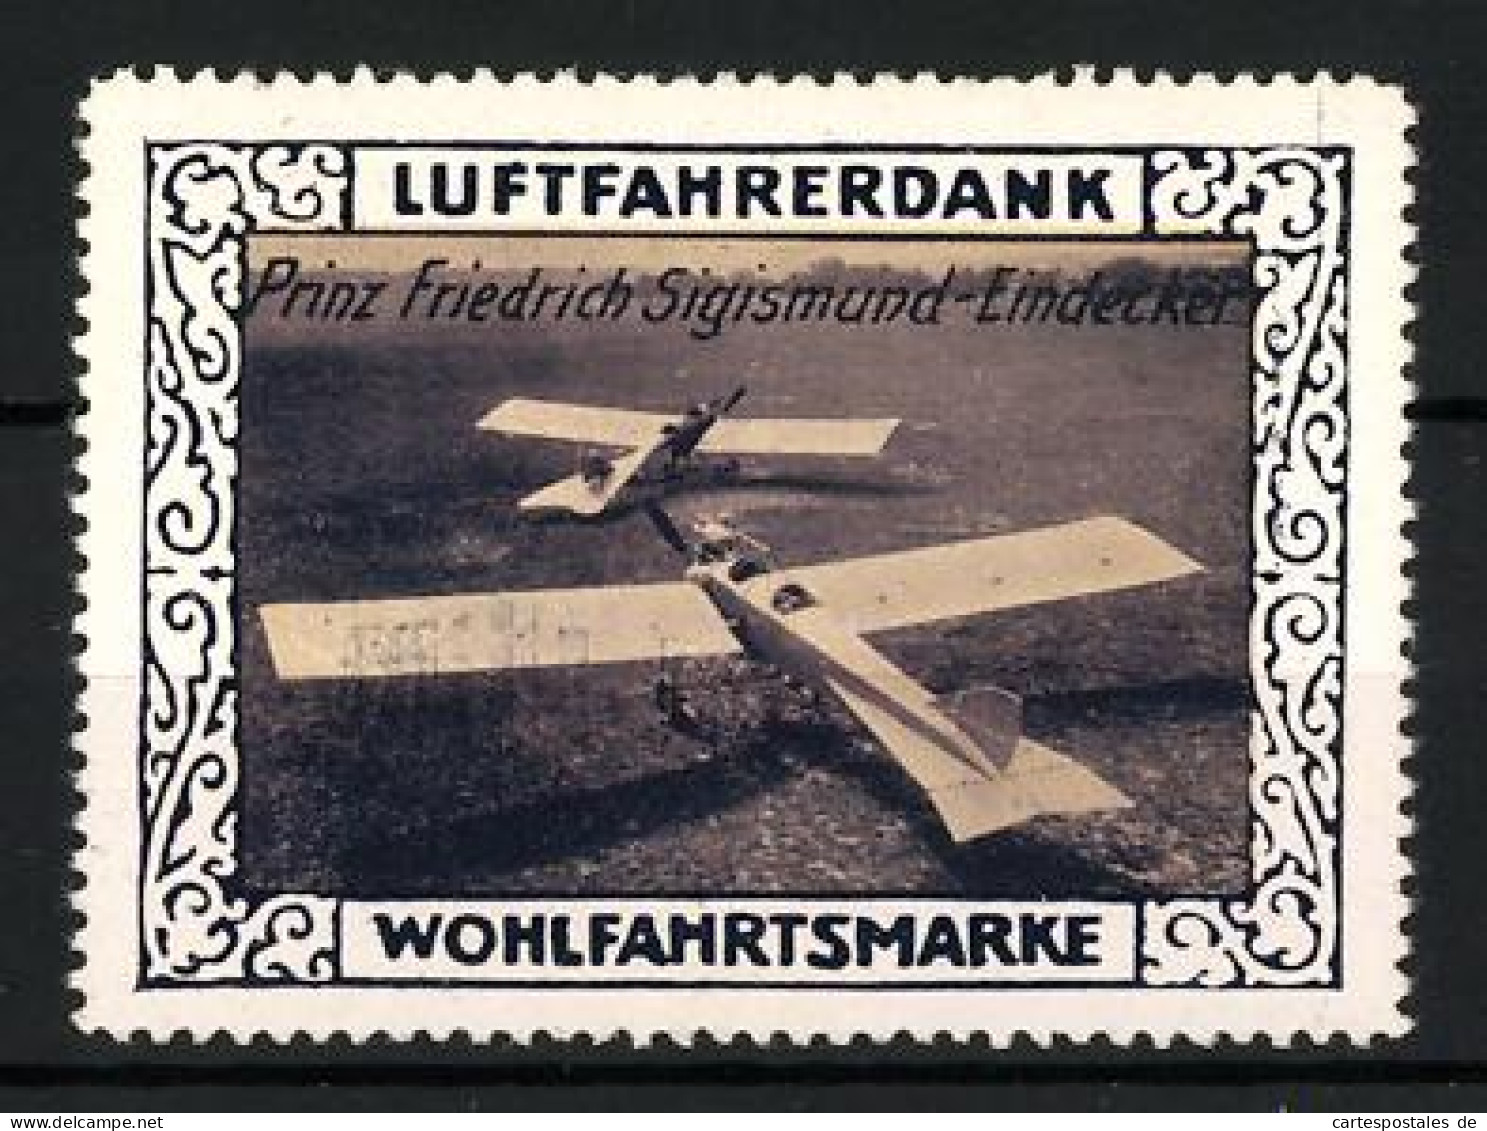 Reklamemarke Print Friedrich Sigismund-Eindecker, Wohlfahrtsmarke Luftfahrerdank  - Erinnophilie